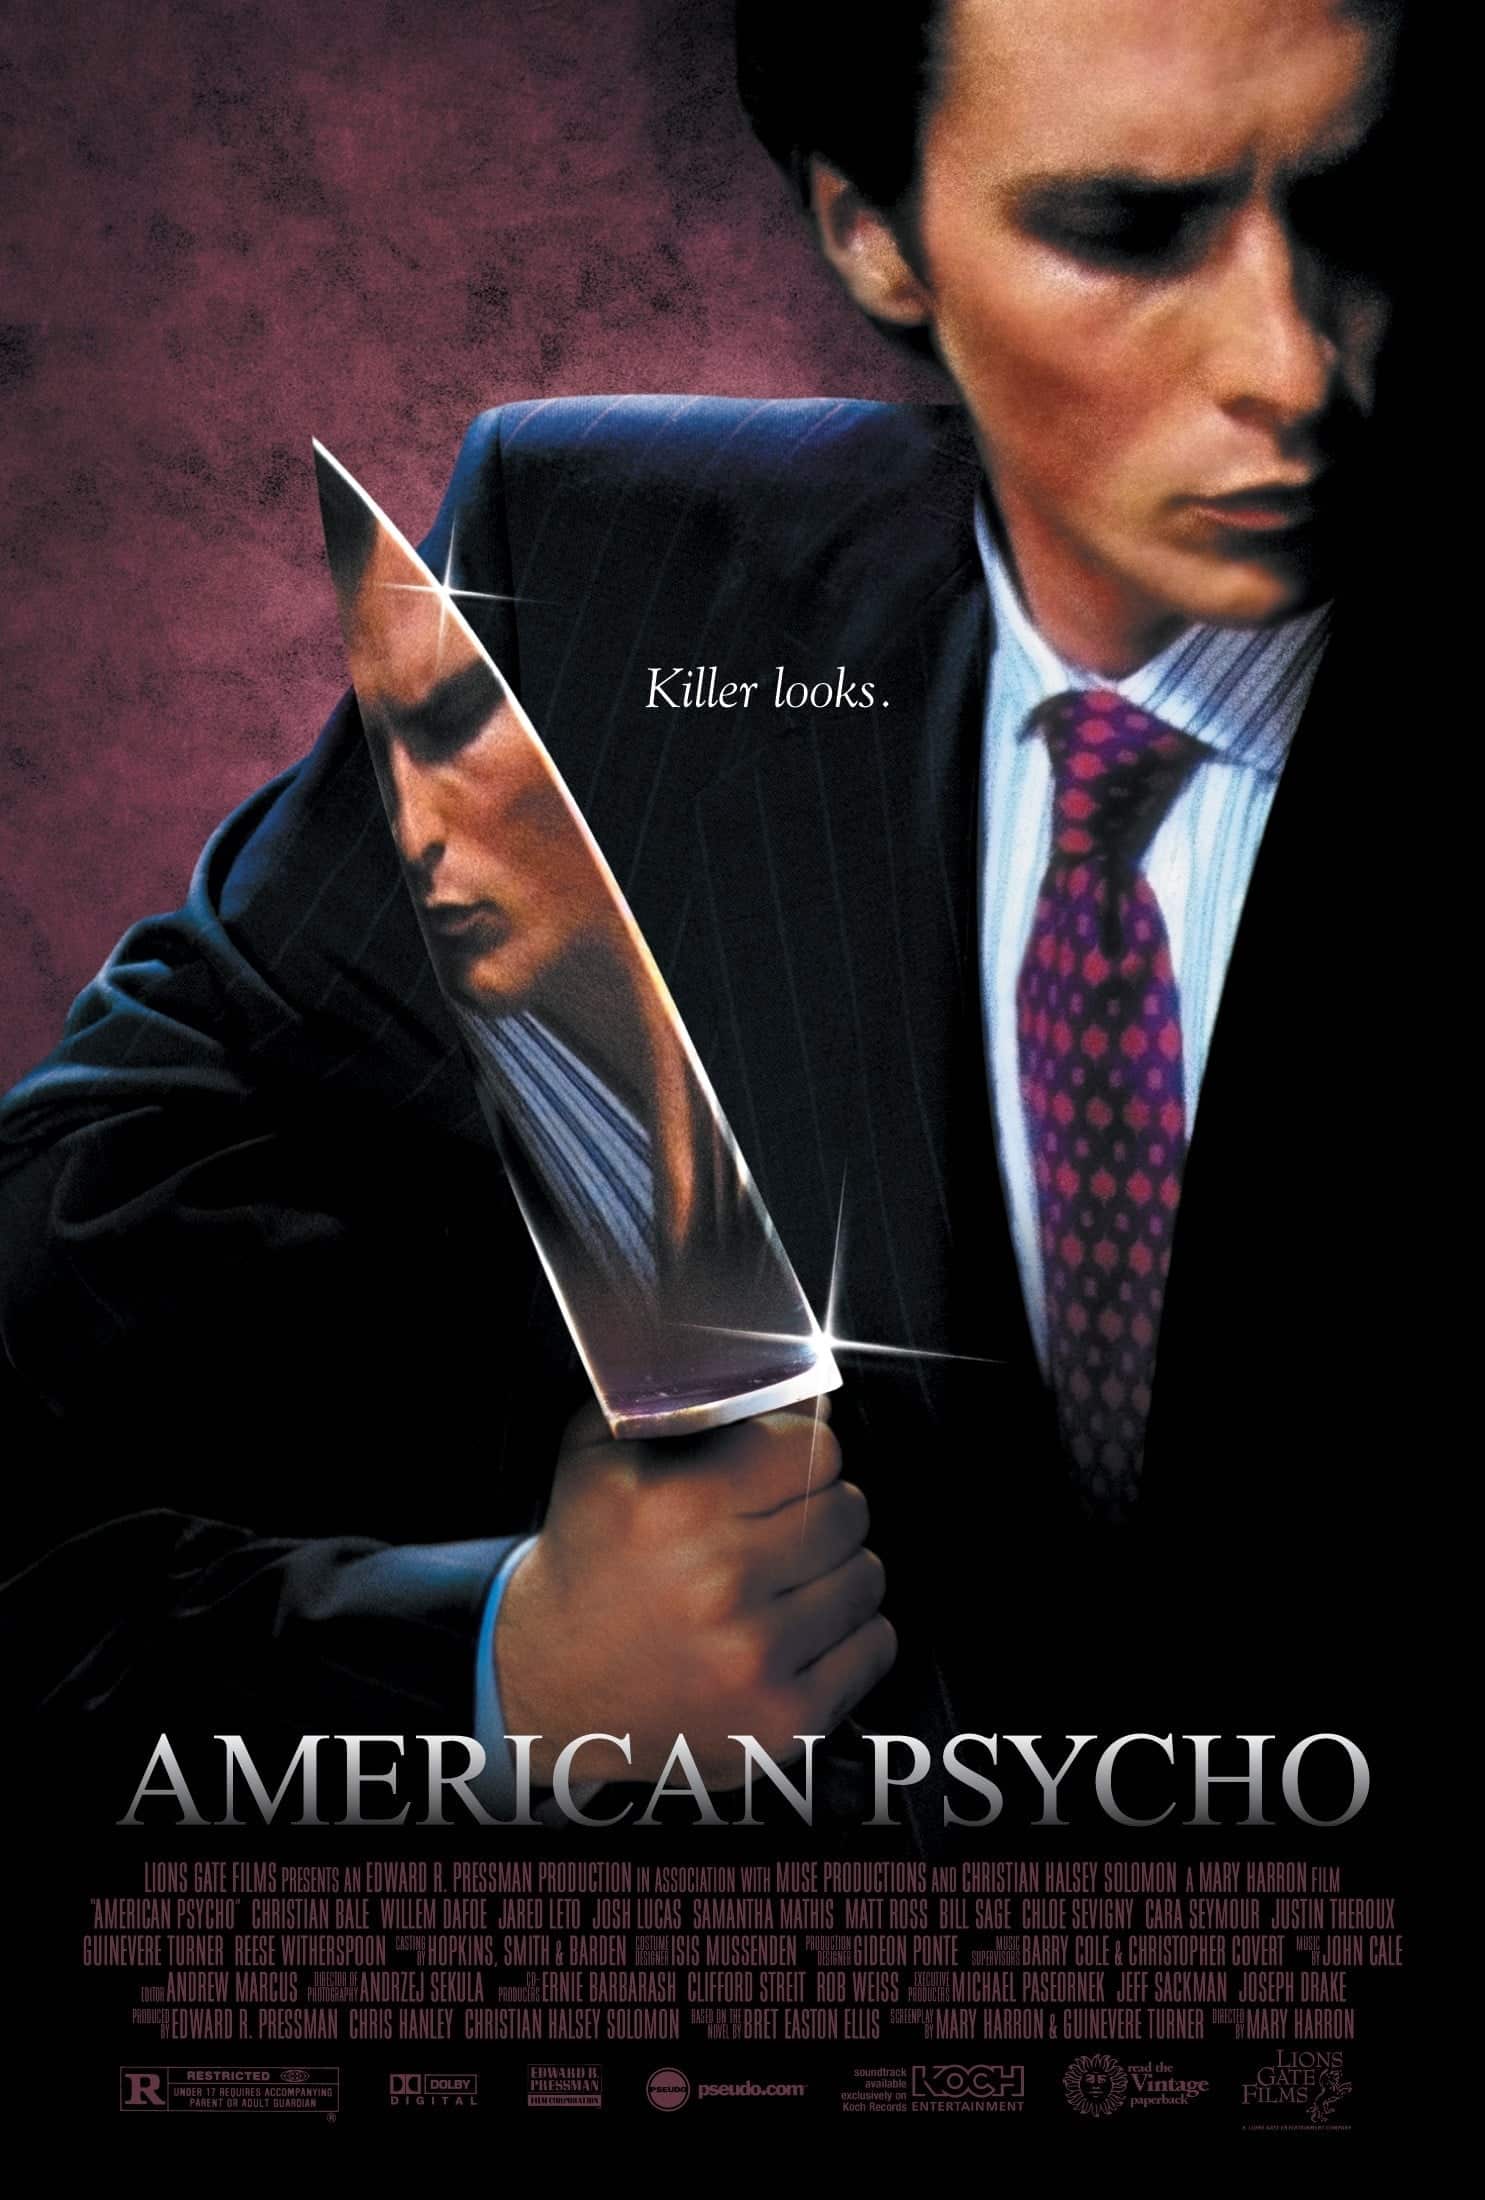 ดูหนังออนไลน์ฟรี American Psycho 2000 อเมริกัน ไซโค